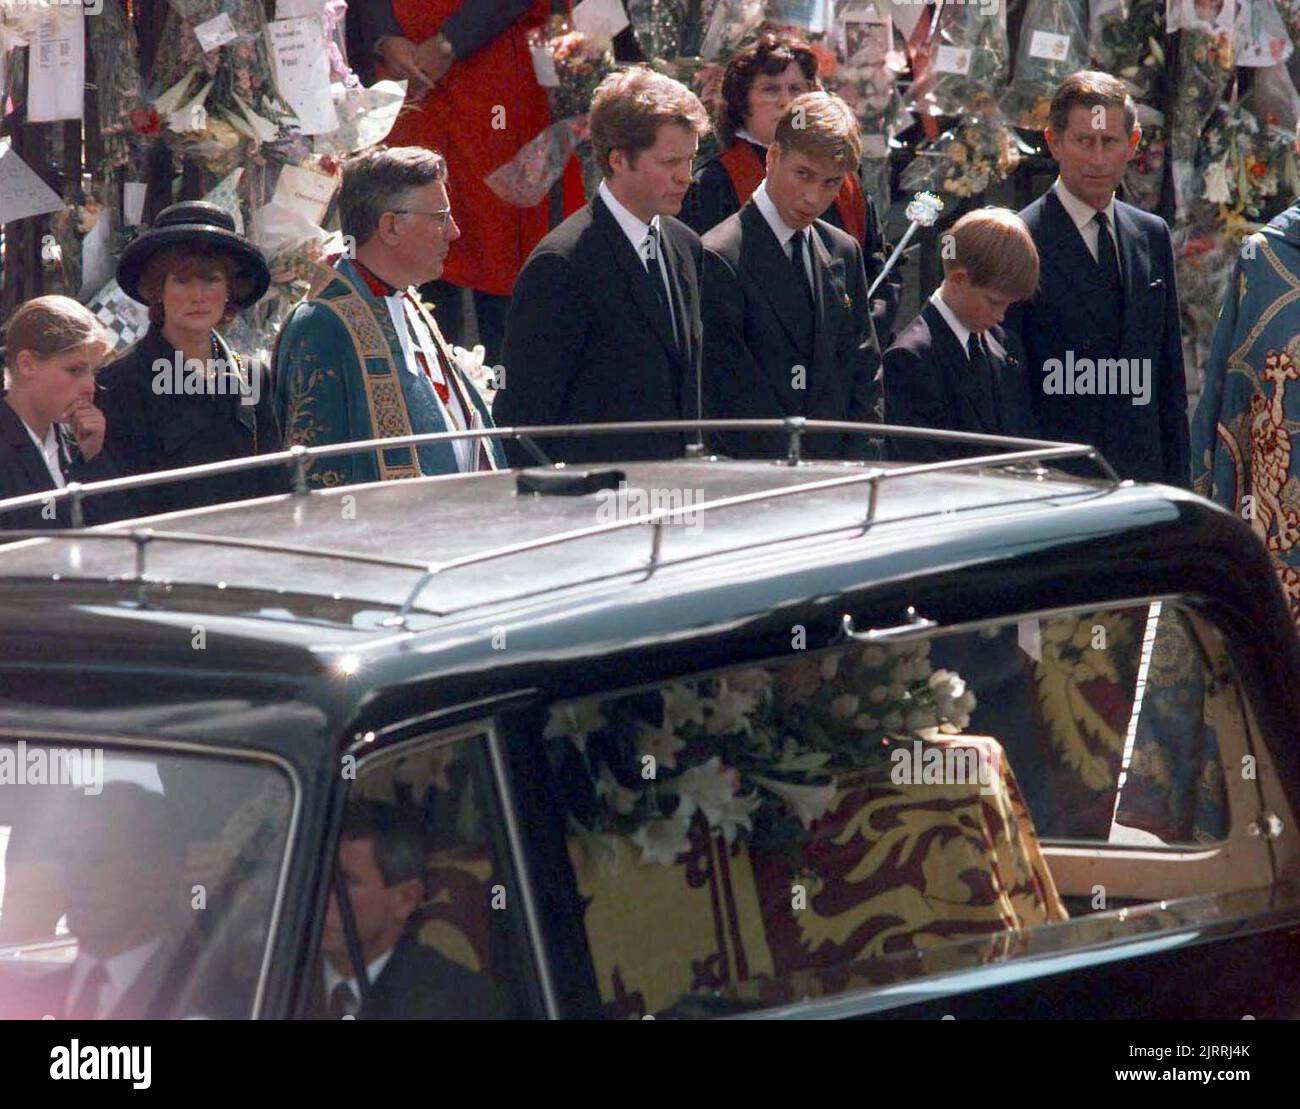 Photo du dossier datée du 06/09/97 de (troisième gauche-droite) le comte Spencer, le prince William, le prince Harry, le prince de Galles, regardez la corbillard portant le cercueil de Diana, la princesse de Galles quitte l'abbaye de Westminster à Londres, après son service funéraire. Diana, princesse de Galles, a été tuée sur 31 août 1997 dans un accident de voiture dans le tunnel du Pont de l'Alma à Paris. Date de publication : vendredi 26 août 2022. Banque D'Images